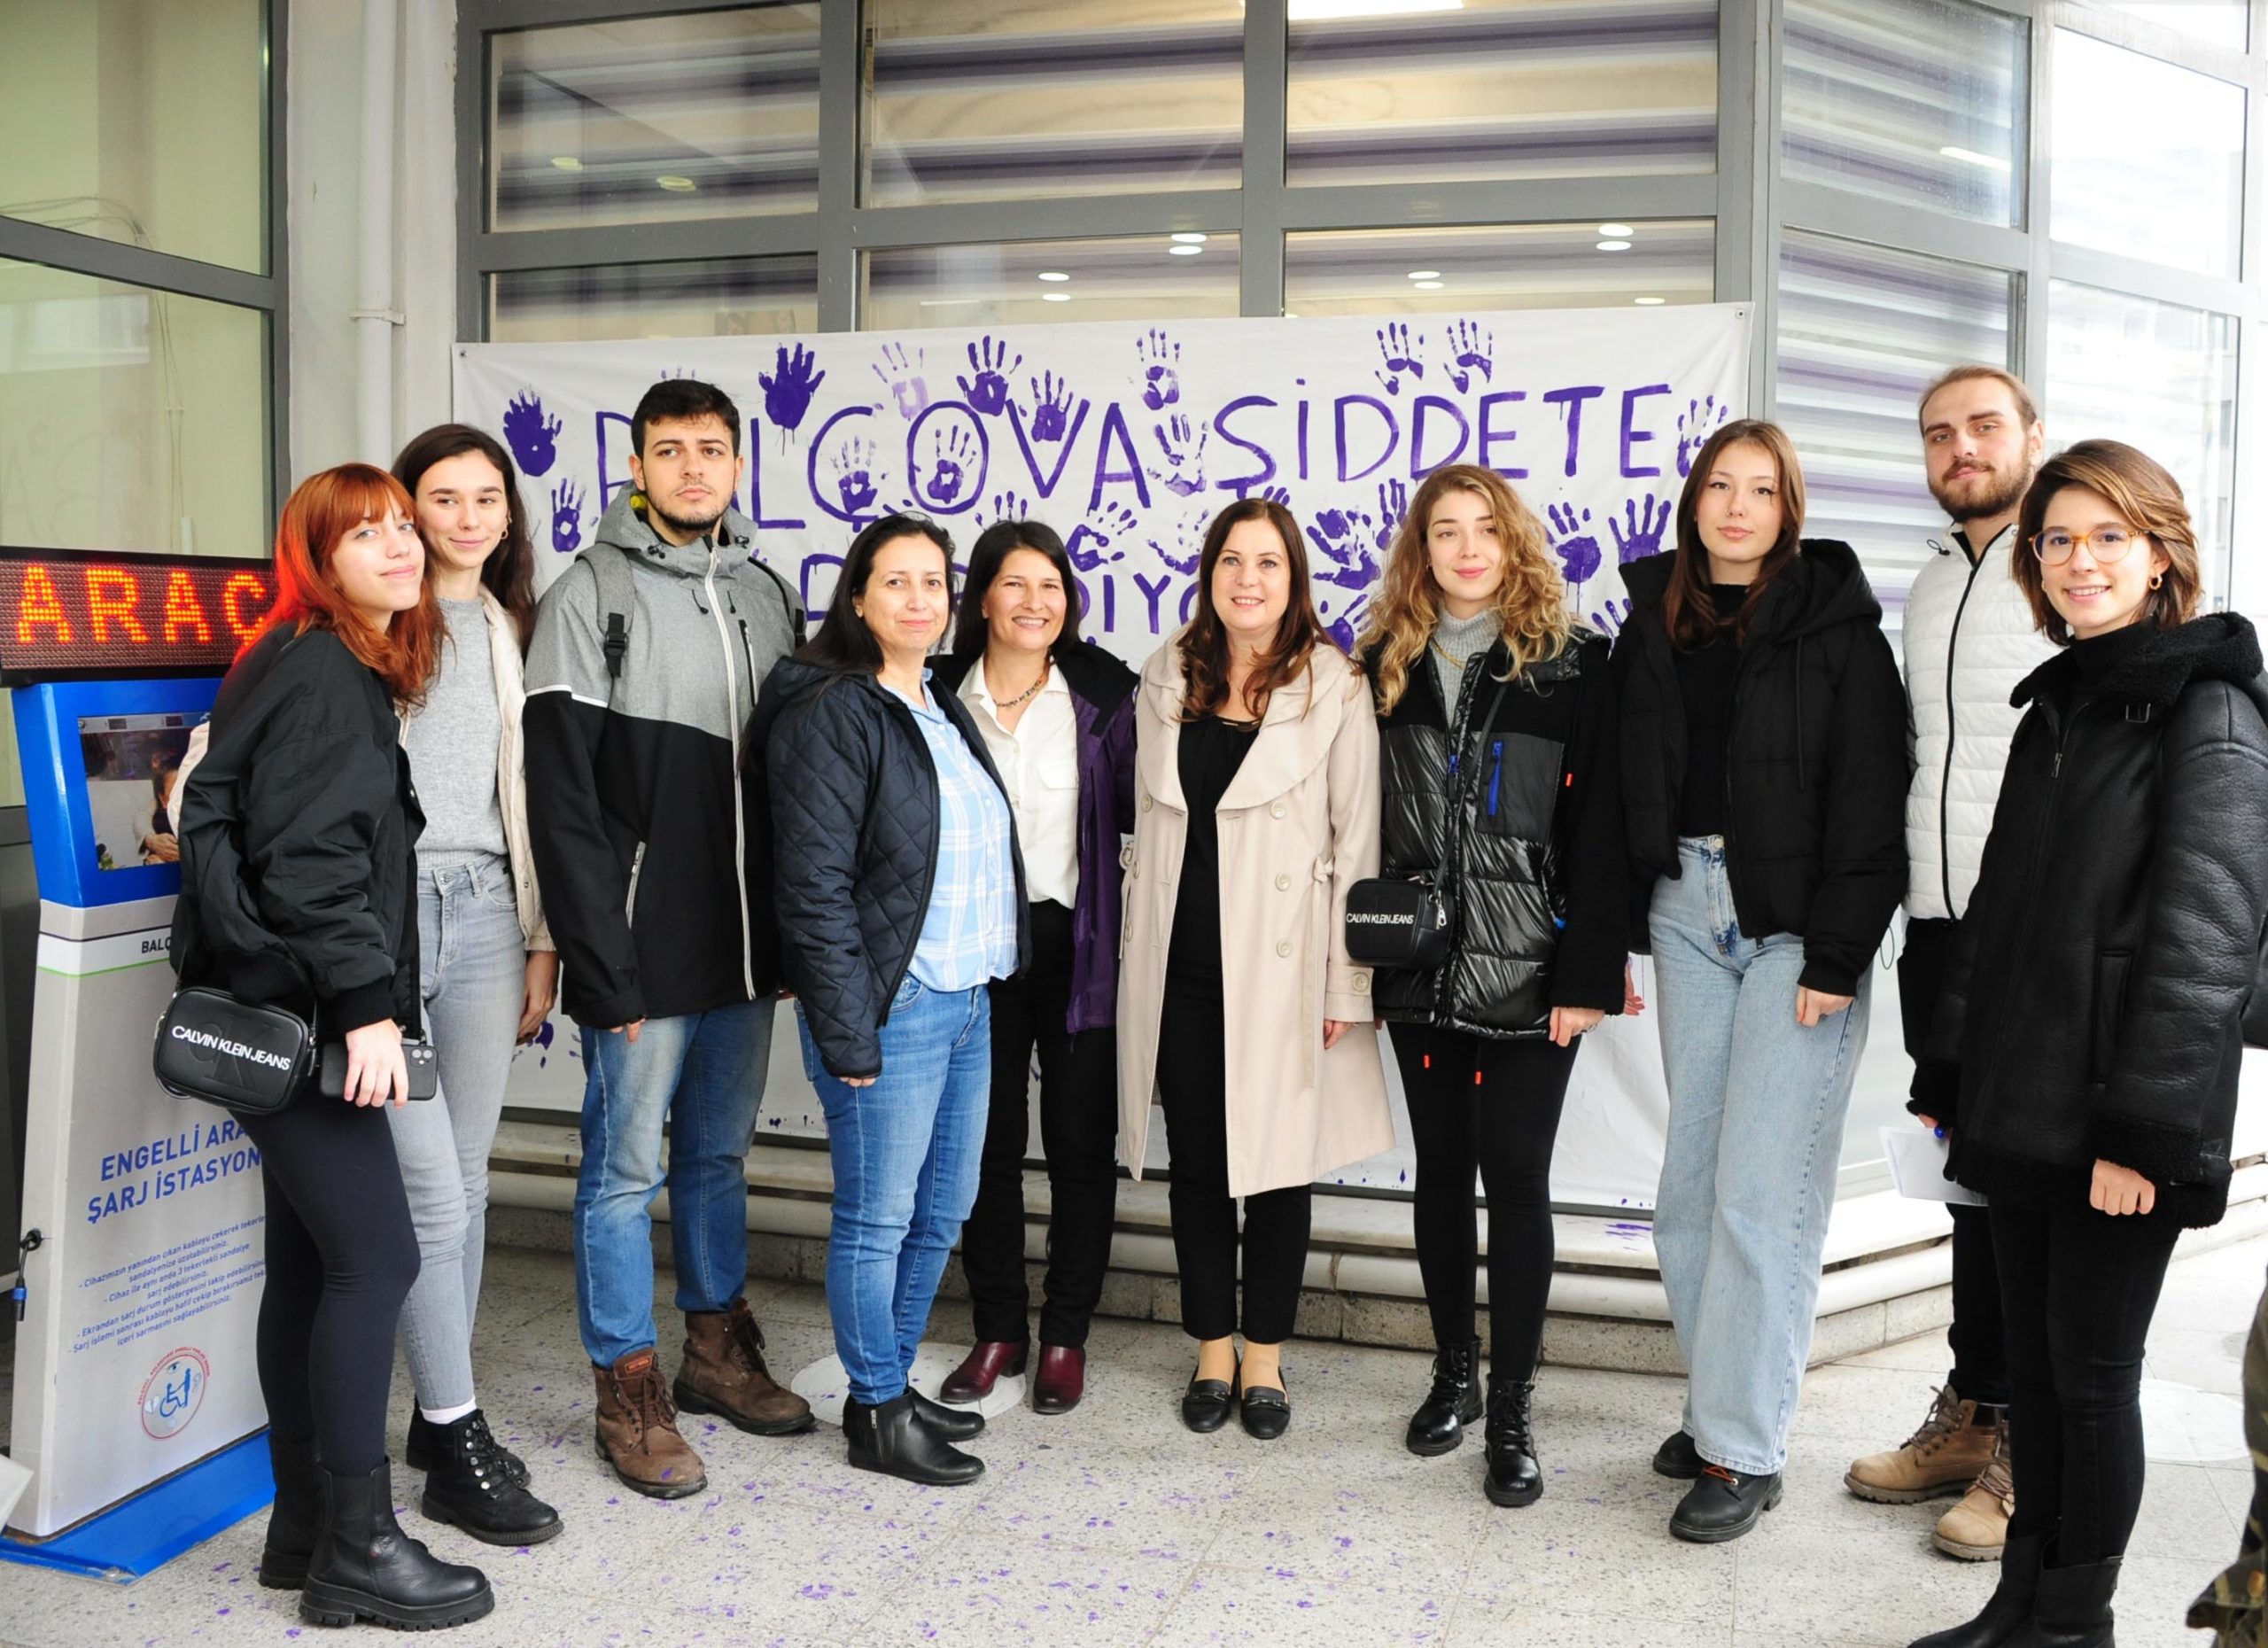 şiddet 25 Kasım Kadına Yönelik Şiddete Karşı Uluslararası Mücadele Günü nedeniyle Balçova Belediyesi ve Yaşar Üniversitesi Kadın ve Aile Çalışmaları Uygulama ve Araştırma Merkezi (YÜKAM), şiddete karşı bir farkındalık eylemi düzenledi. Balçovalı Kadınlar ve Yaşar Üniversitesi İletişim Fakültesi öğrencilerinin katıldığı eylemde Başkan Fatma Çalkaya “Şiddet durana kadar sesimizi yükselteceğiz” dedi.